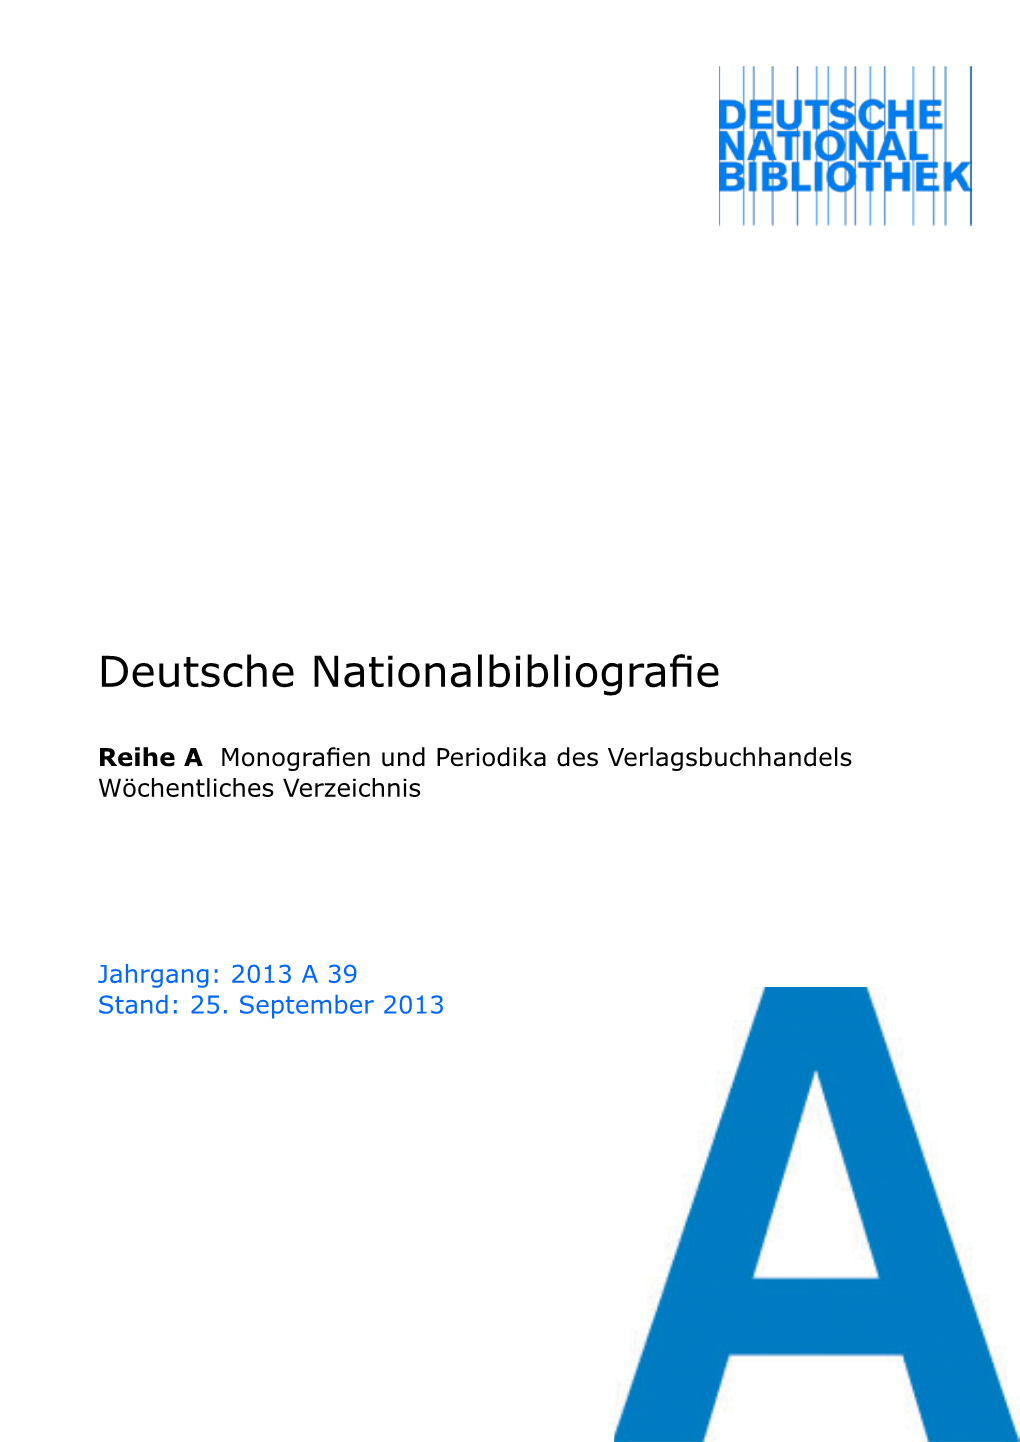 Deutsche Nationalbibliografie 2013 a 39